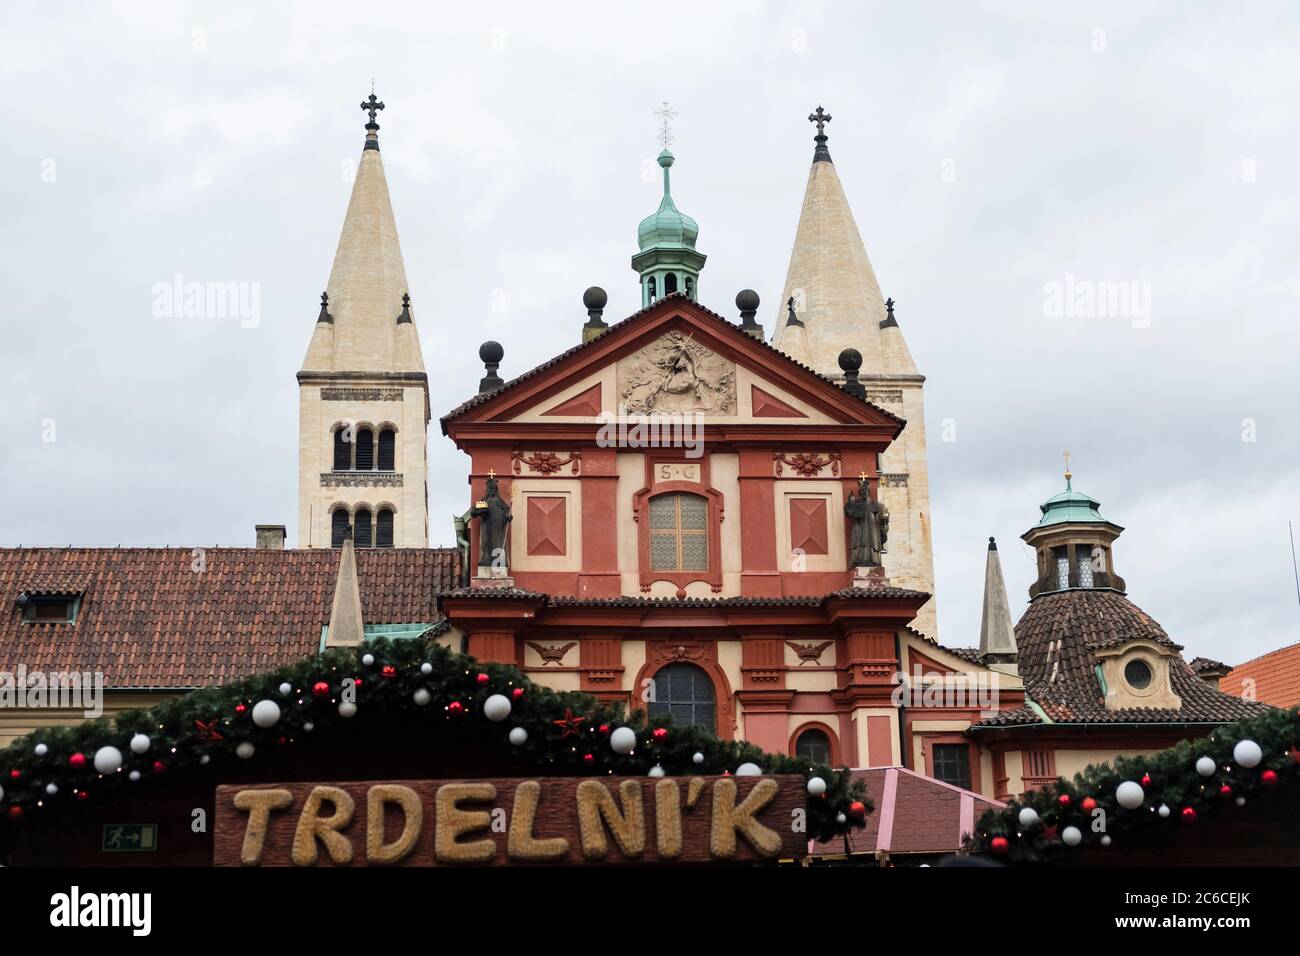 Trdelnik food vendor shop at a Christmas market at Prague Castle Stock Photo